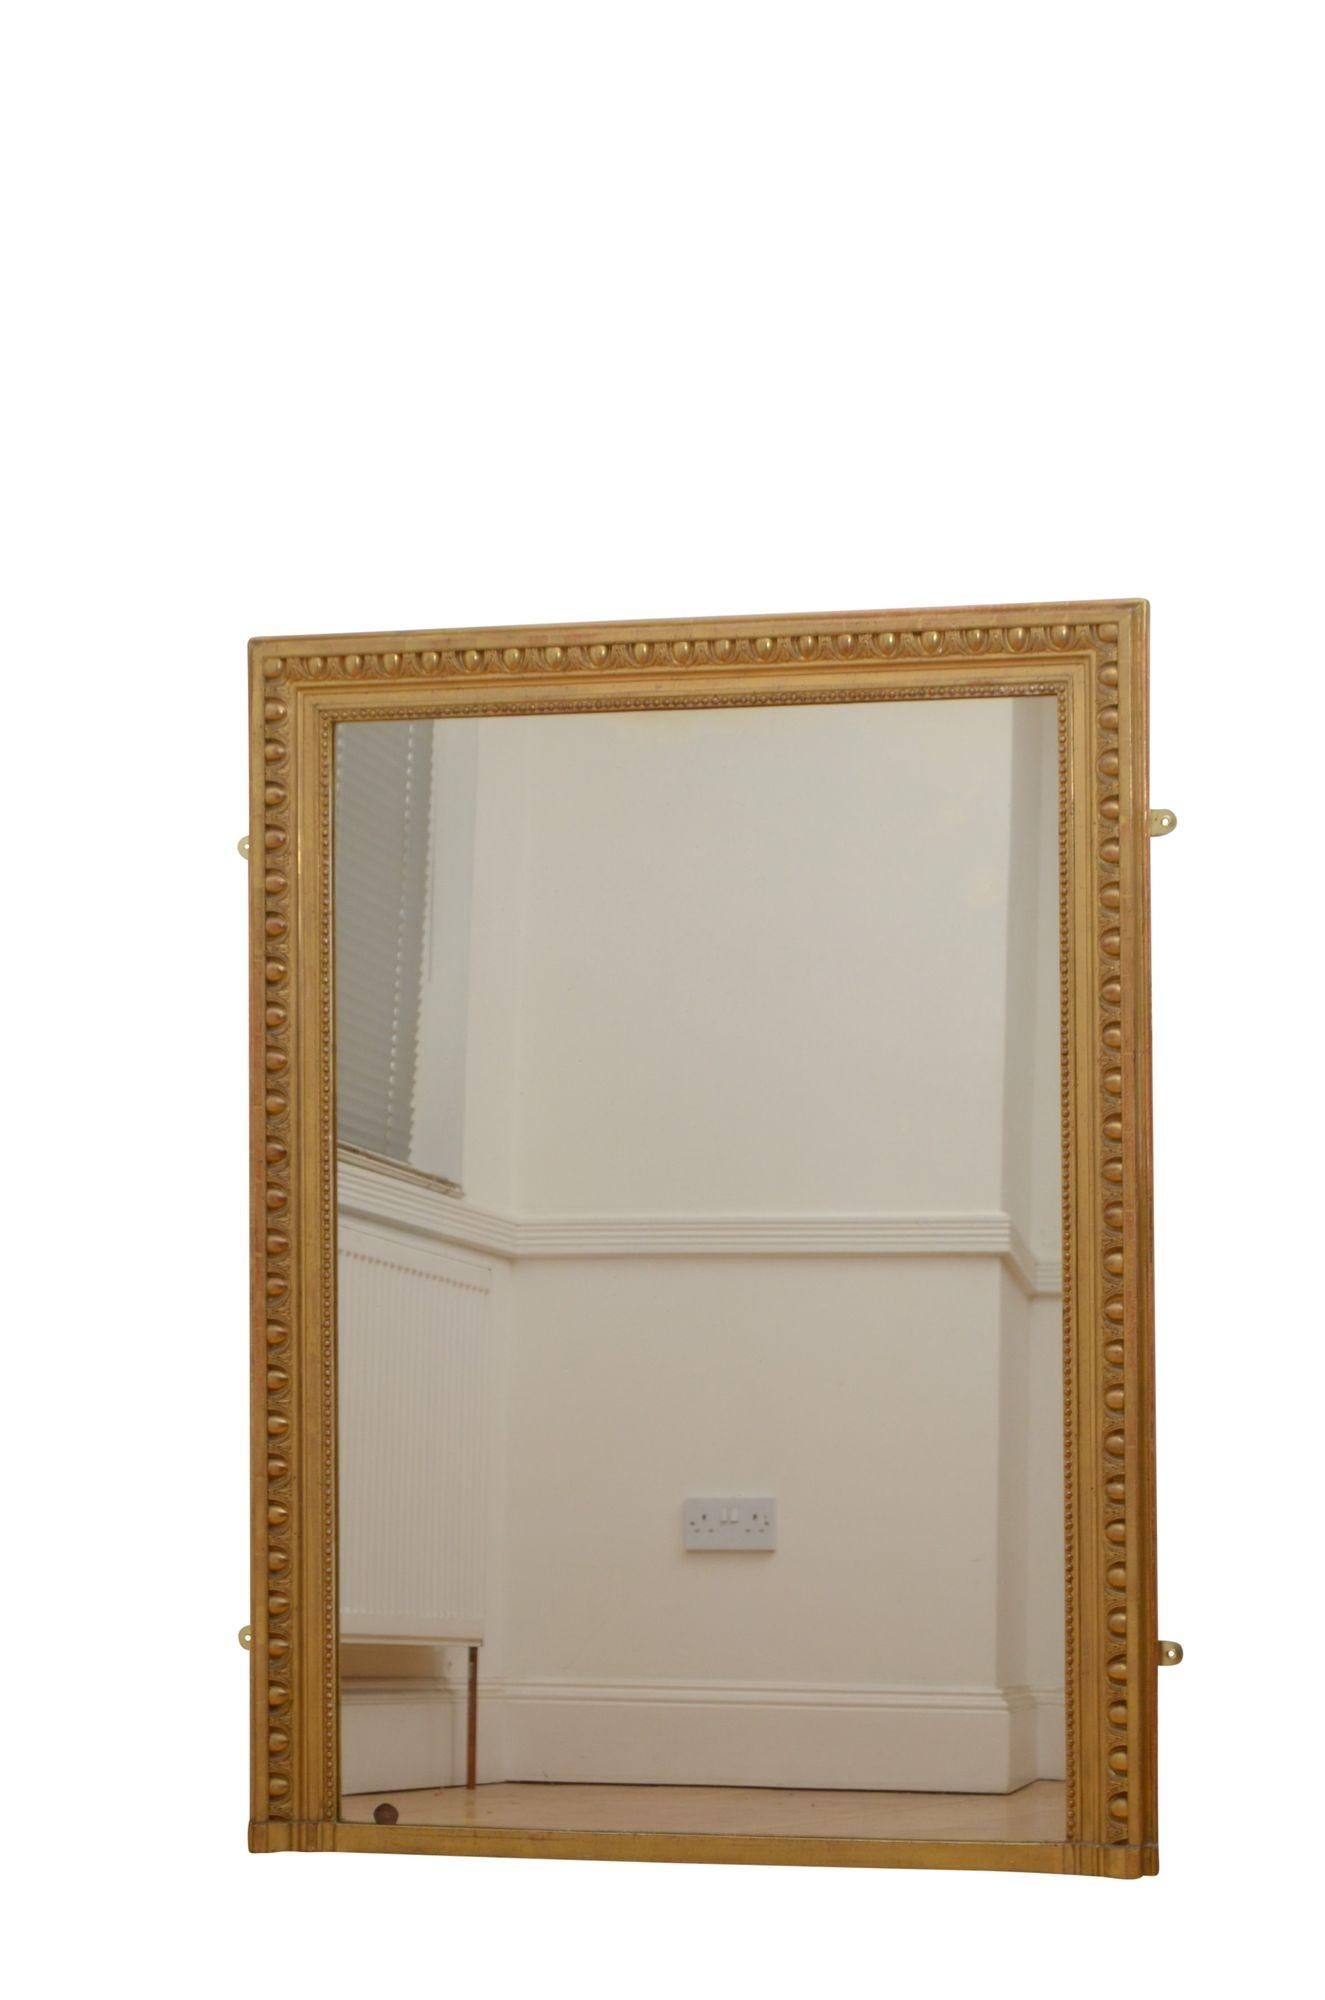 P0255  Feine 19. Jahrhundert Französisch Vergoldung Konsole Tisch oder Wandspiegel, mit Original-Glas mit geringfügigen Stockflecken und Unvollkommenheiten und vergoldeten Rahmen mit Perlen Rand - 